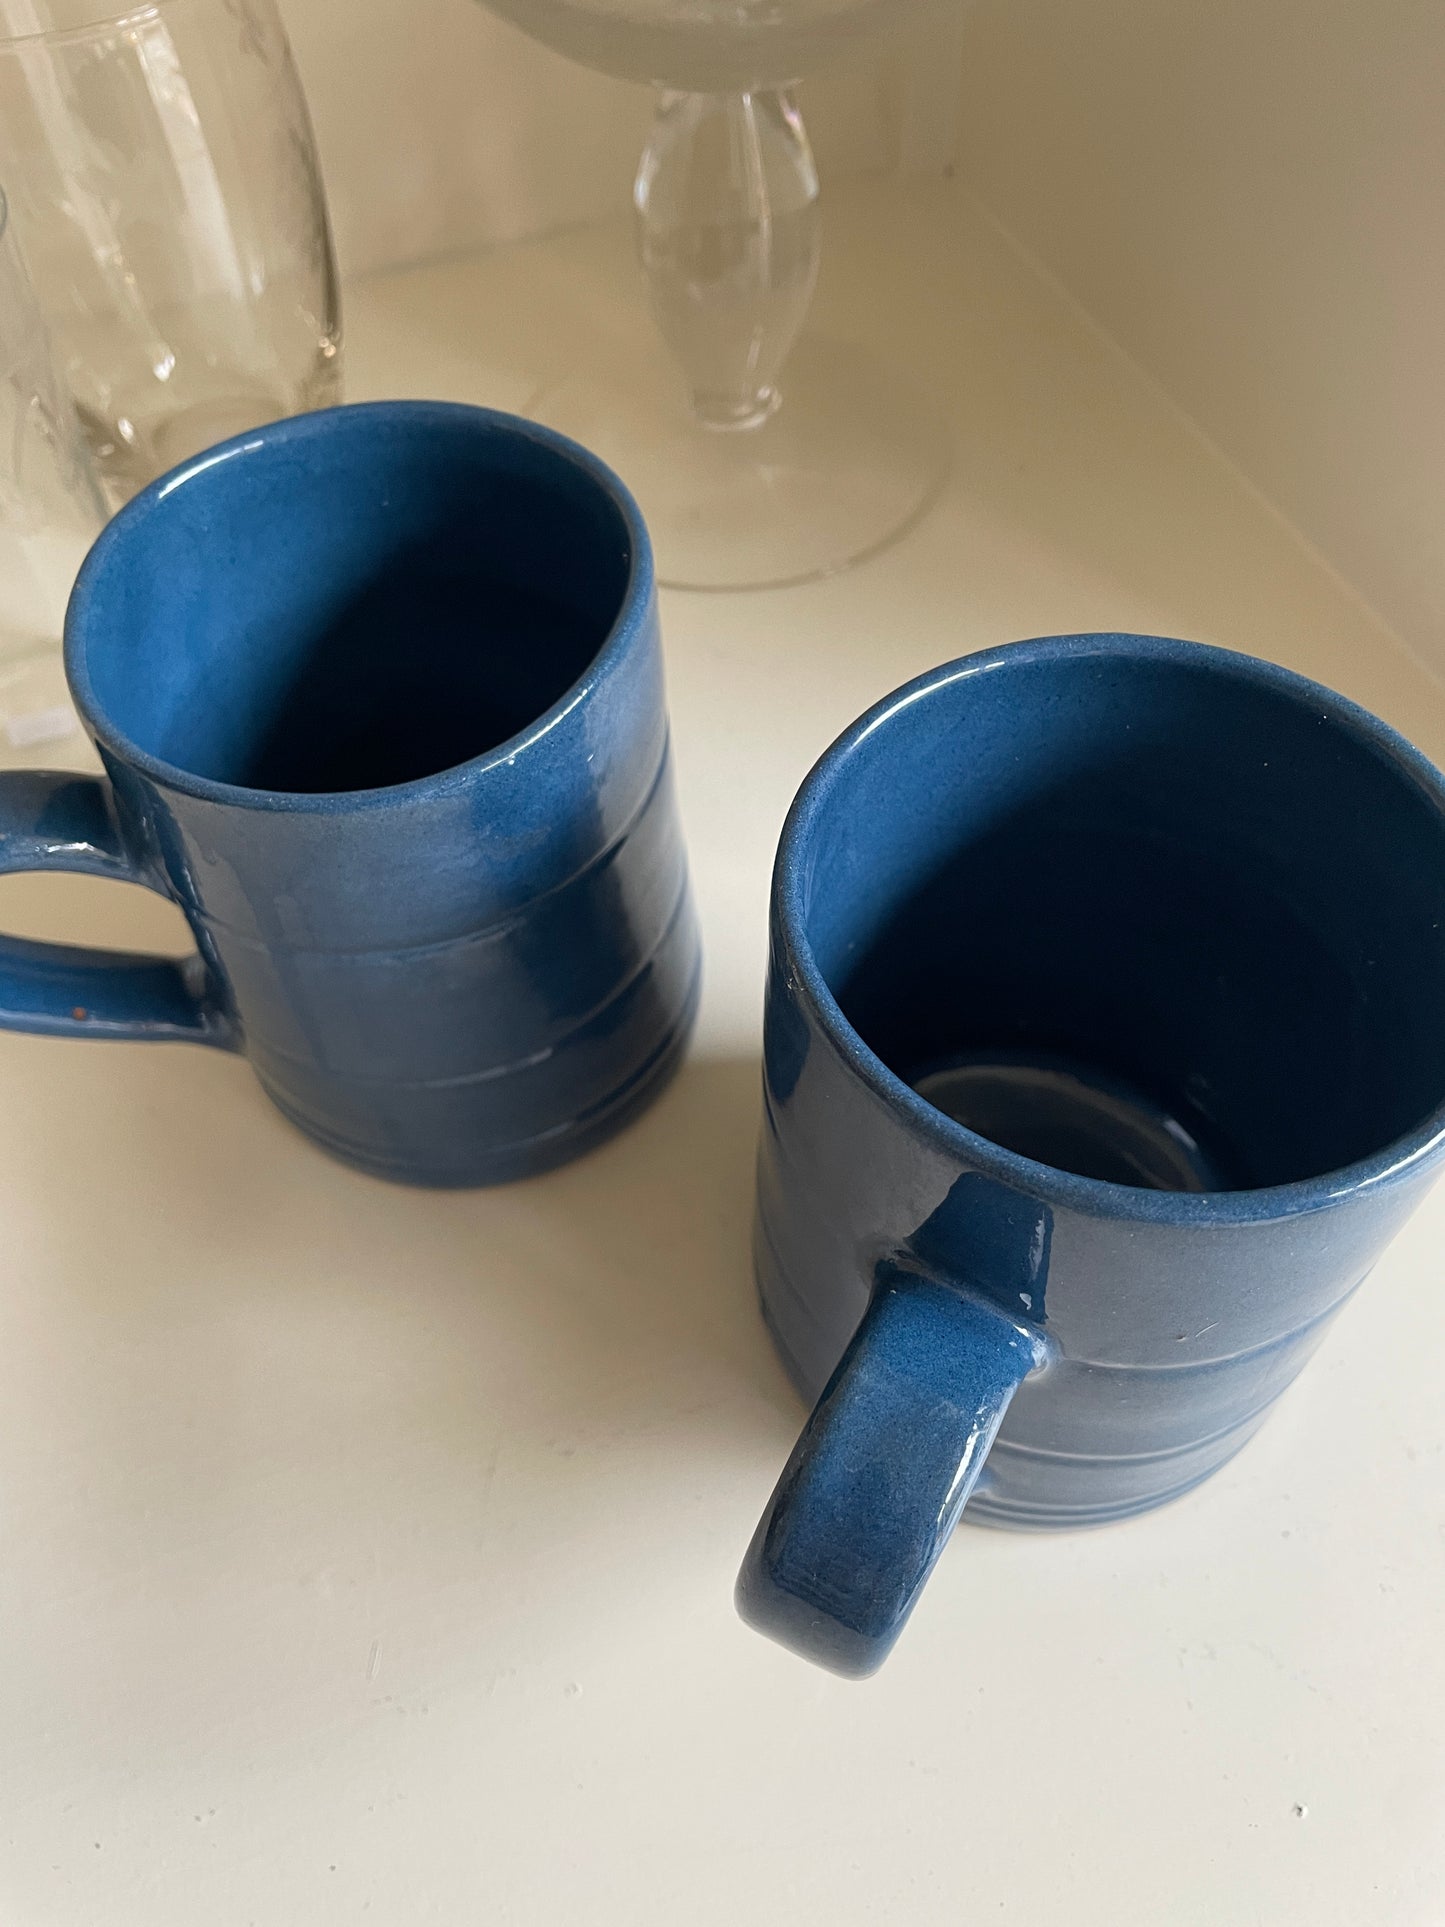 Store blå kopper fra Abbednæs potteri